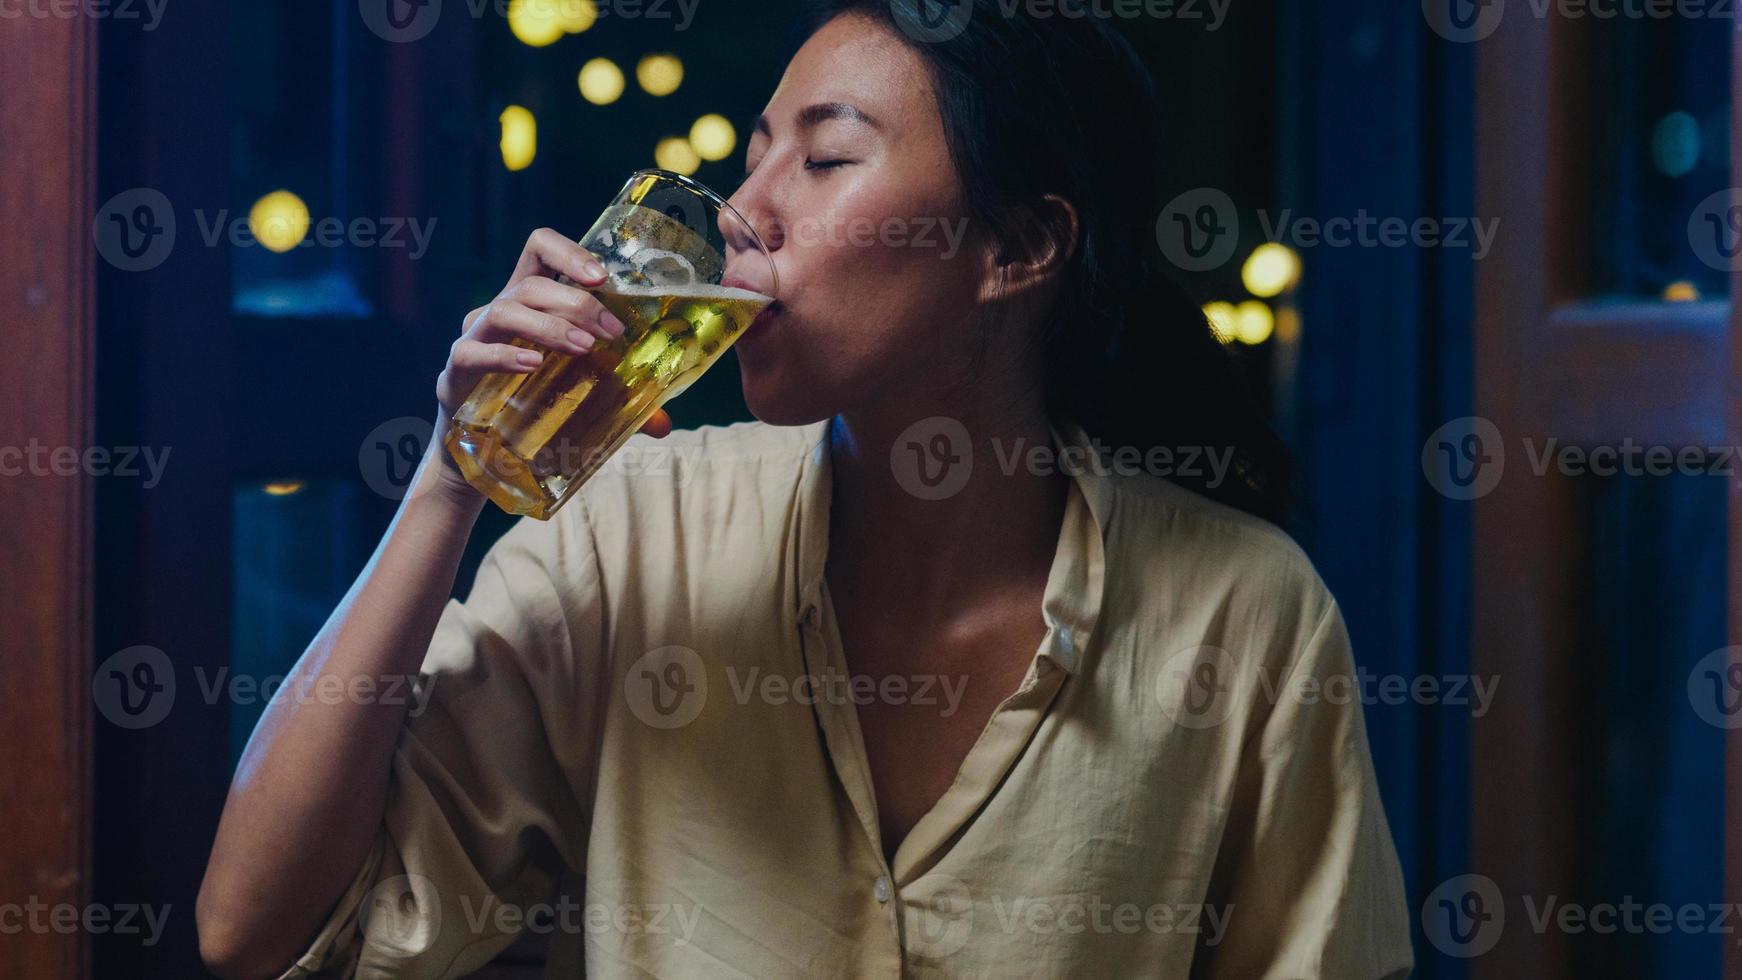 jovem asiática bebendo cerveja se divertindo feliz noite festa ano novo evento on-line celebração via videochamada por telefone em casa à noite. distância social, quarentena para coronavírus. ponto de vista ou pov foto